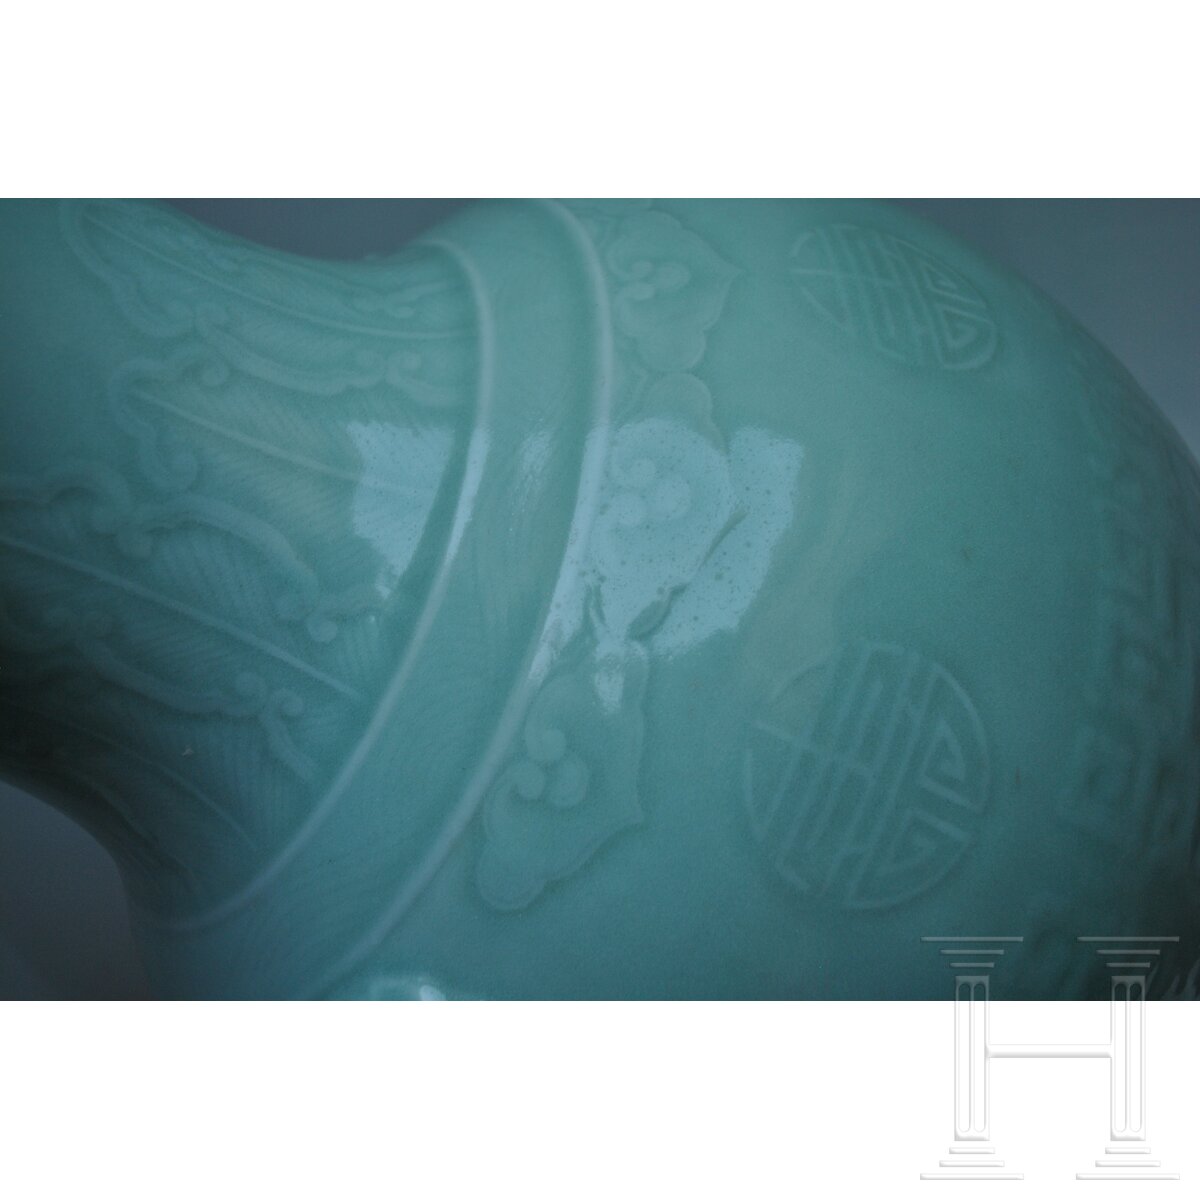 Große Seladon-Vase, China, wohl 19. Jhdt. - Image 9 of 21